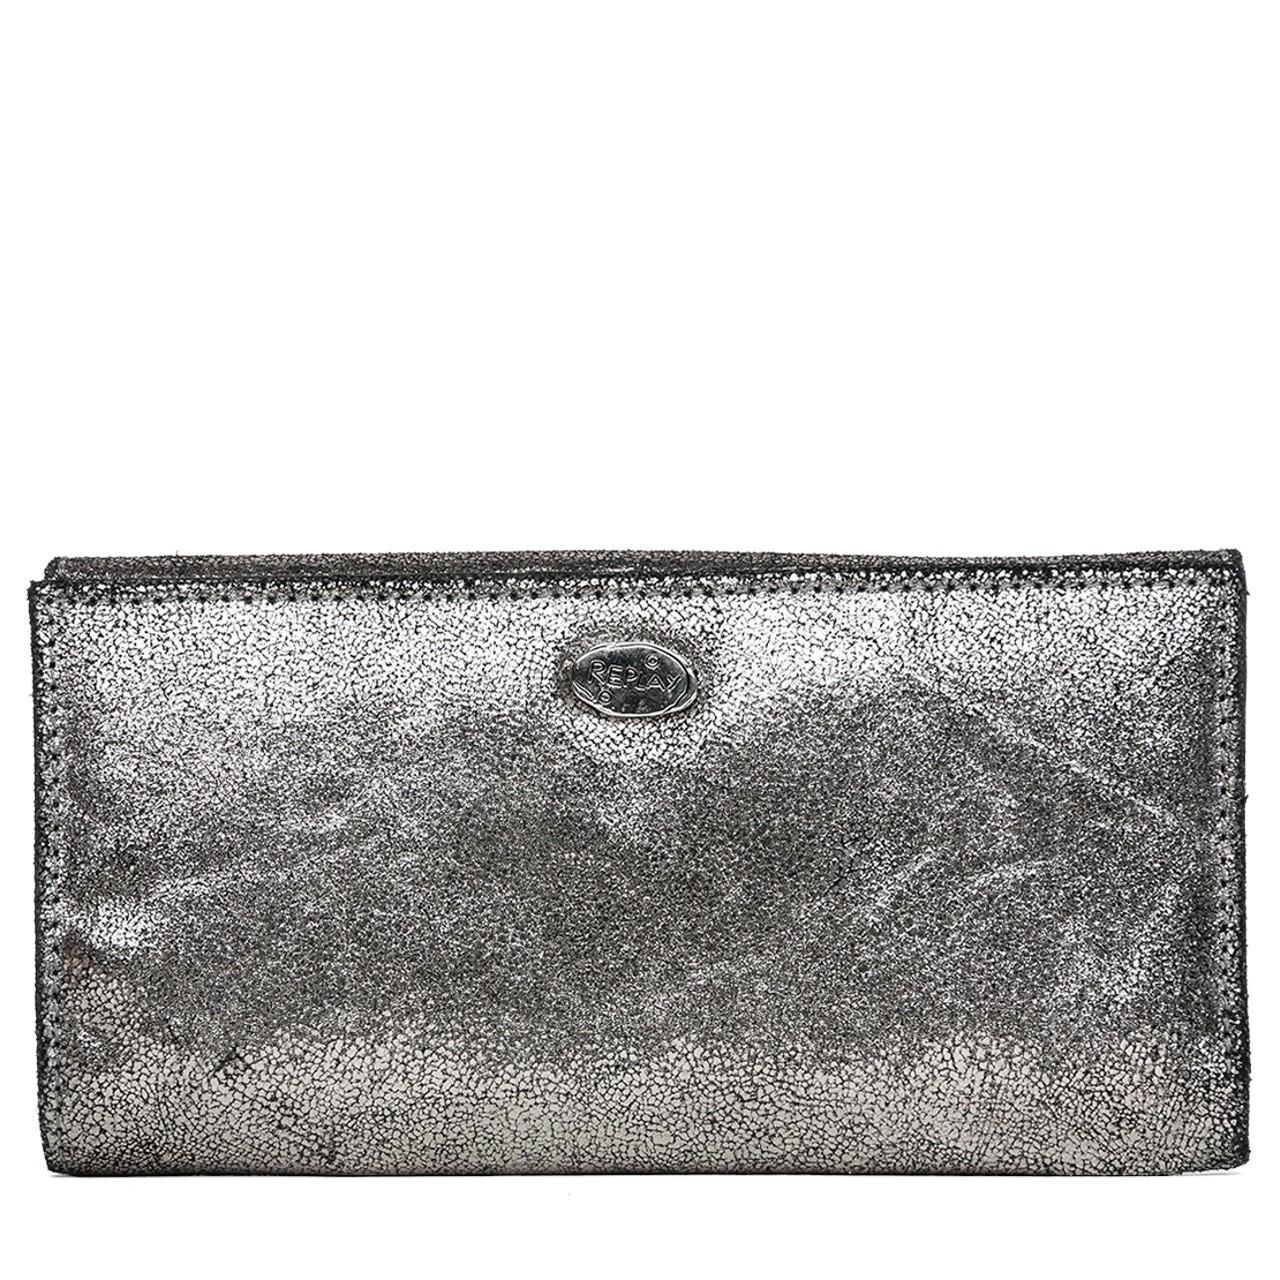 Replay fémes ezüst színű bőr pénztárca 2015.02.27 fotója